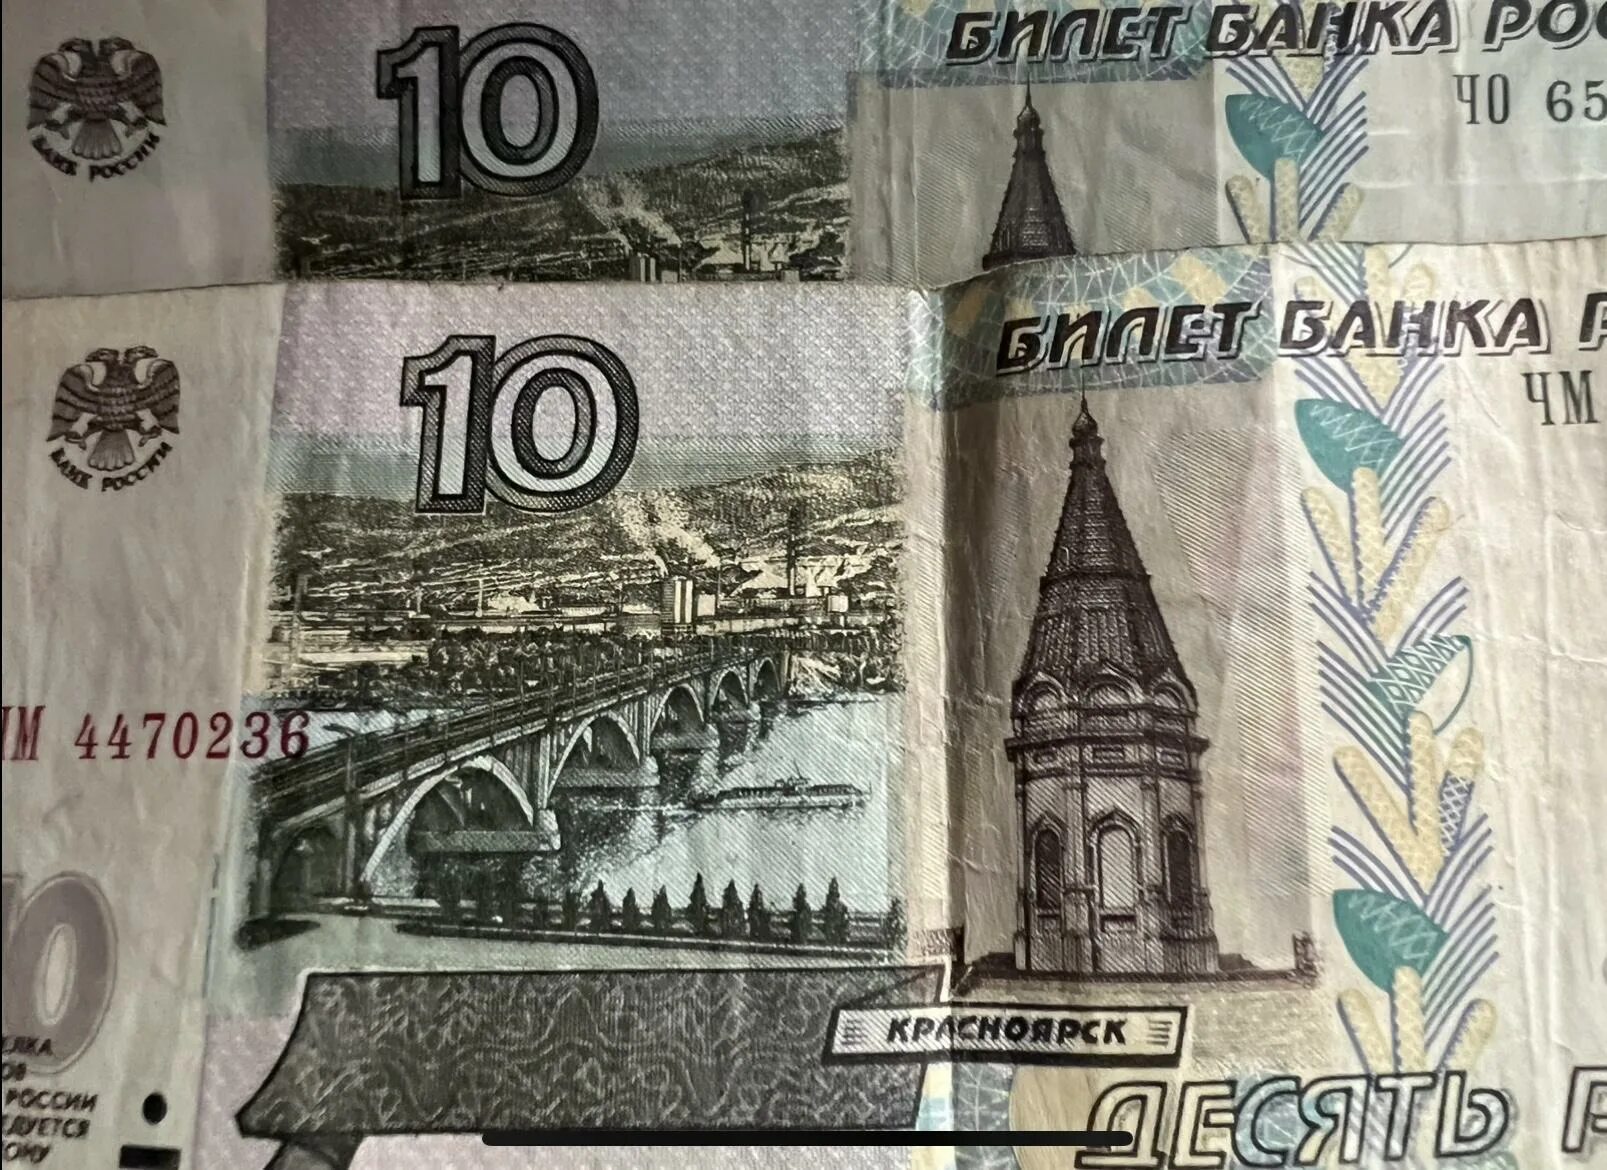 10 Рублей купюра. 10 Рублей банкнота. Купюры номиналом 5 и 10 рублей. Десять рублей купюра.